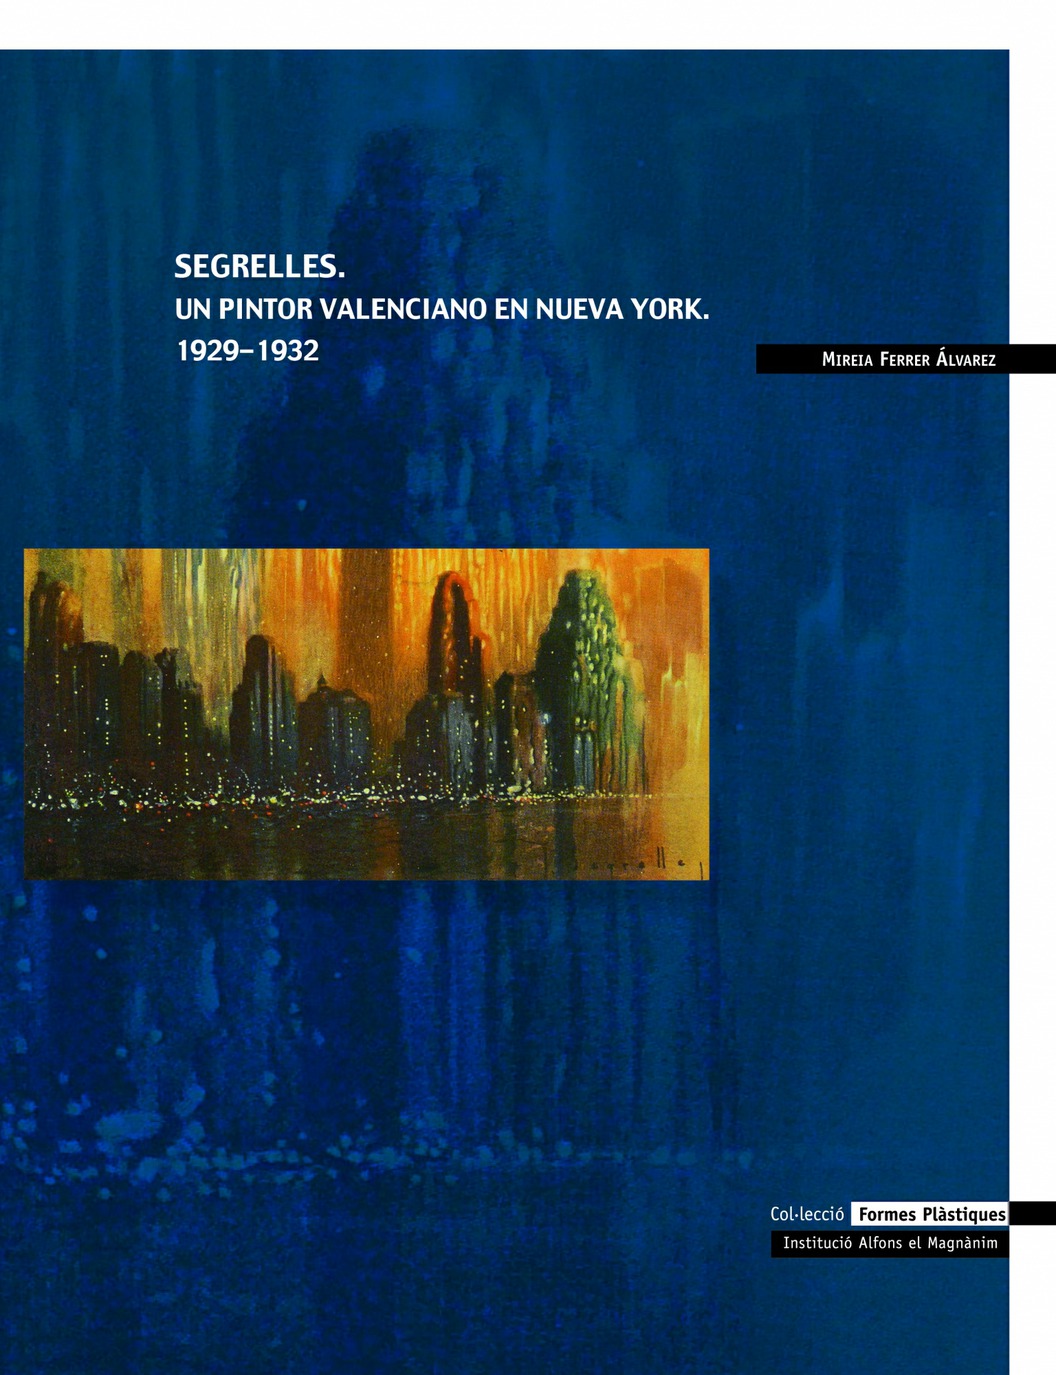 "Presentación del libro""Segrelles. Un pintor valenciano en Nueva York. 1929-1932"""